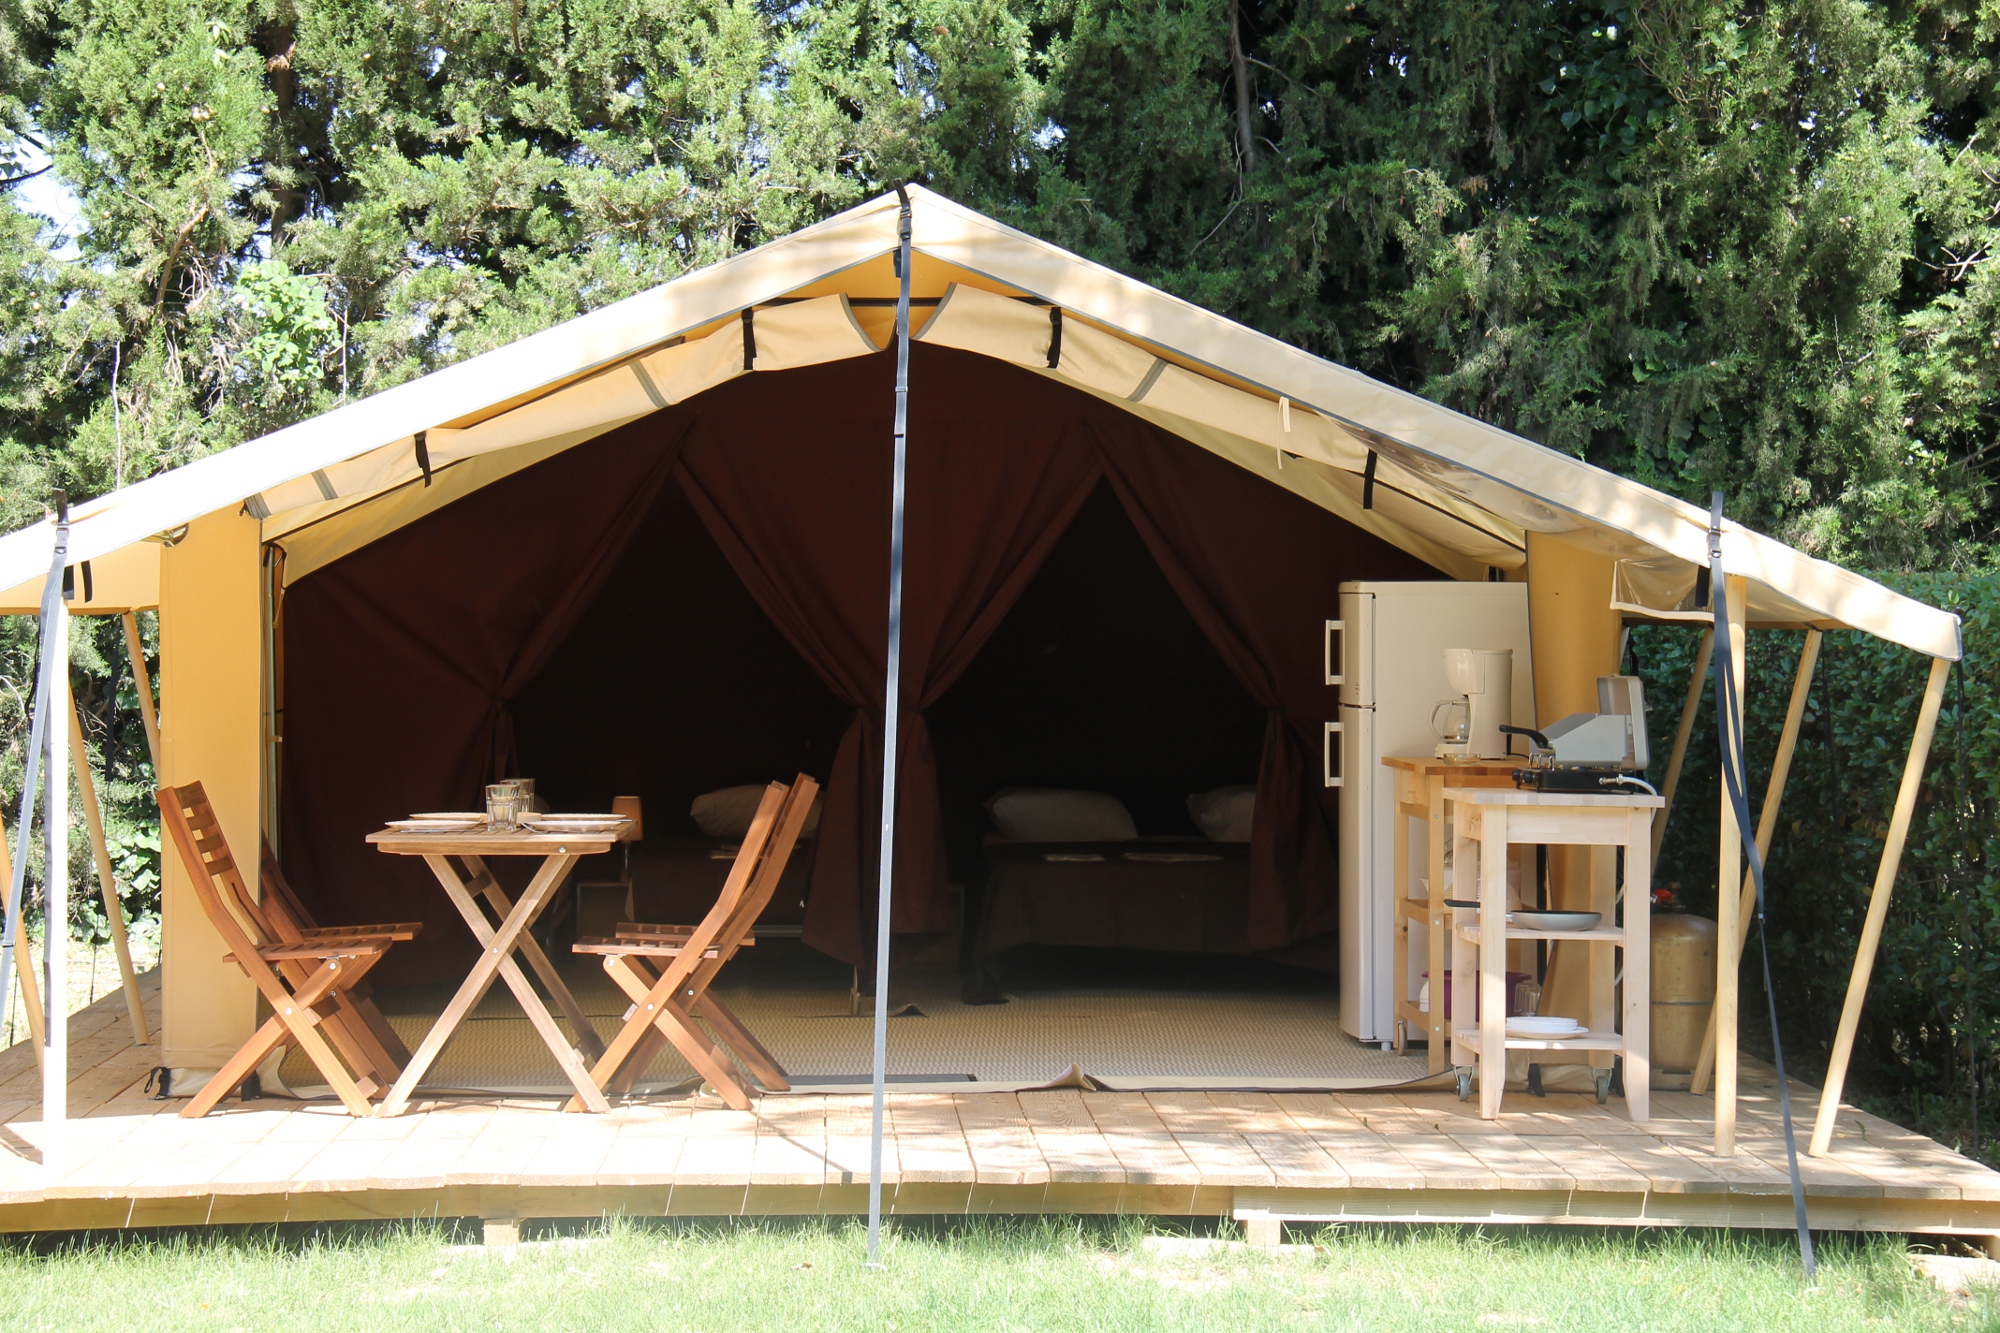 Emplacement de camping avec salle de bain privée - Camping le Dauphin